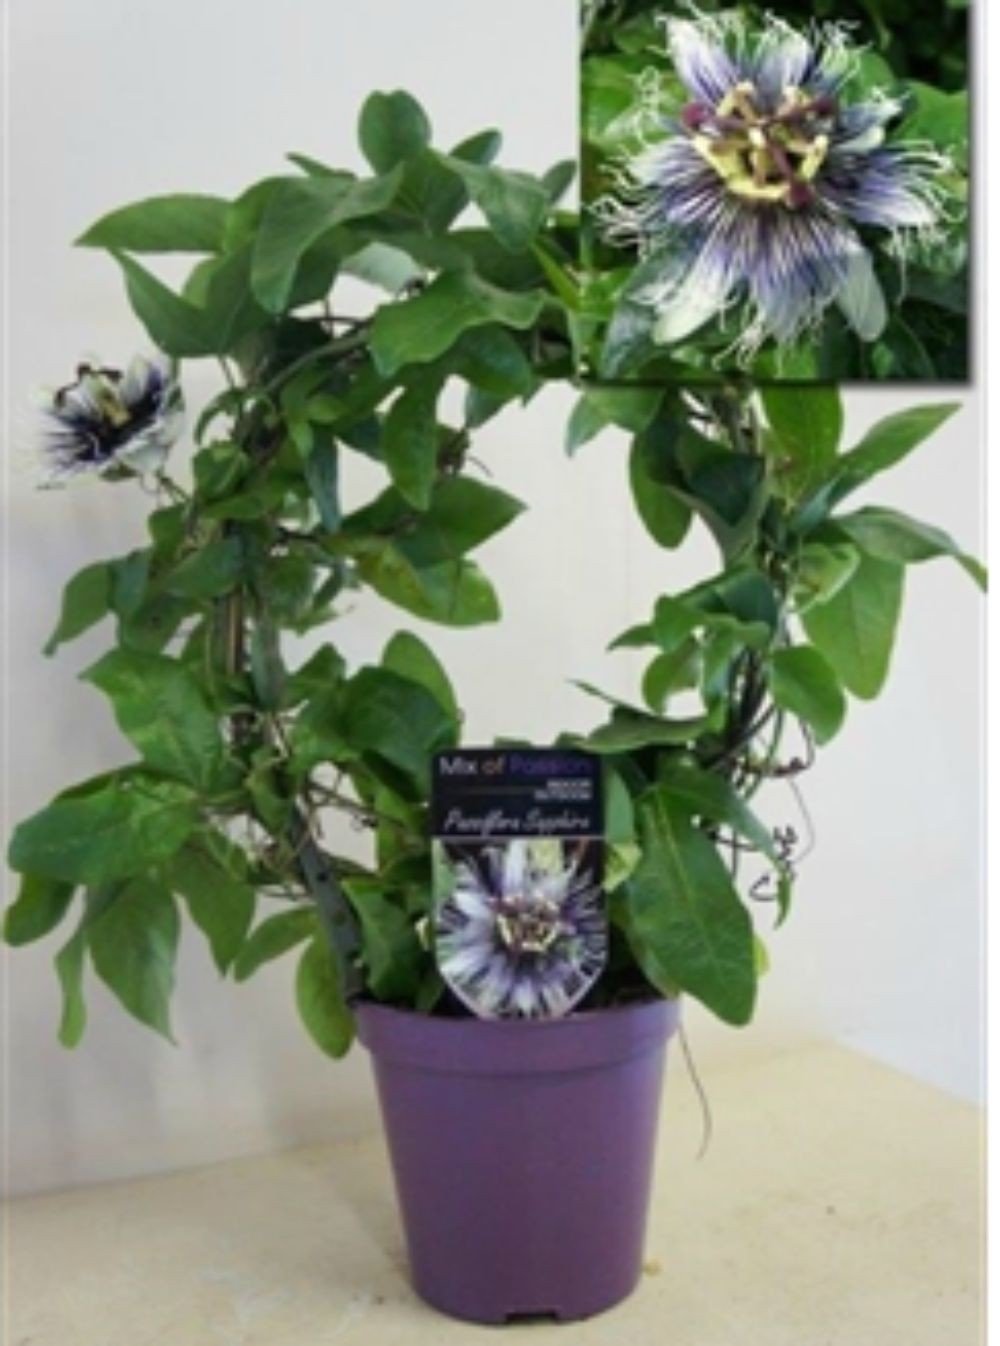 Cumpara online Passiflora bicolora, la cel mai bun pret, cu livrare!